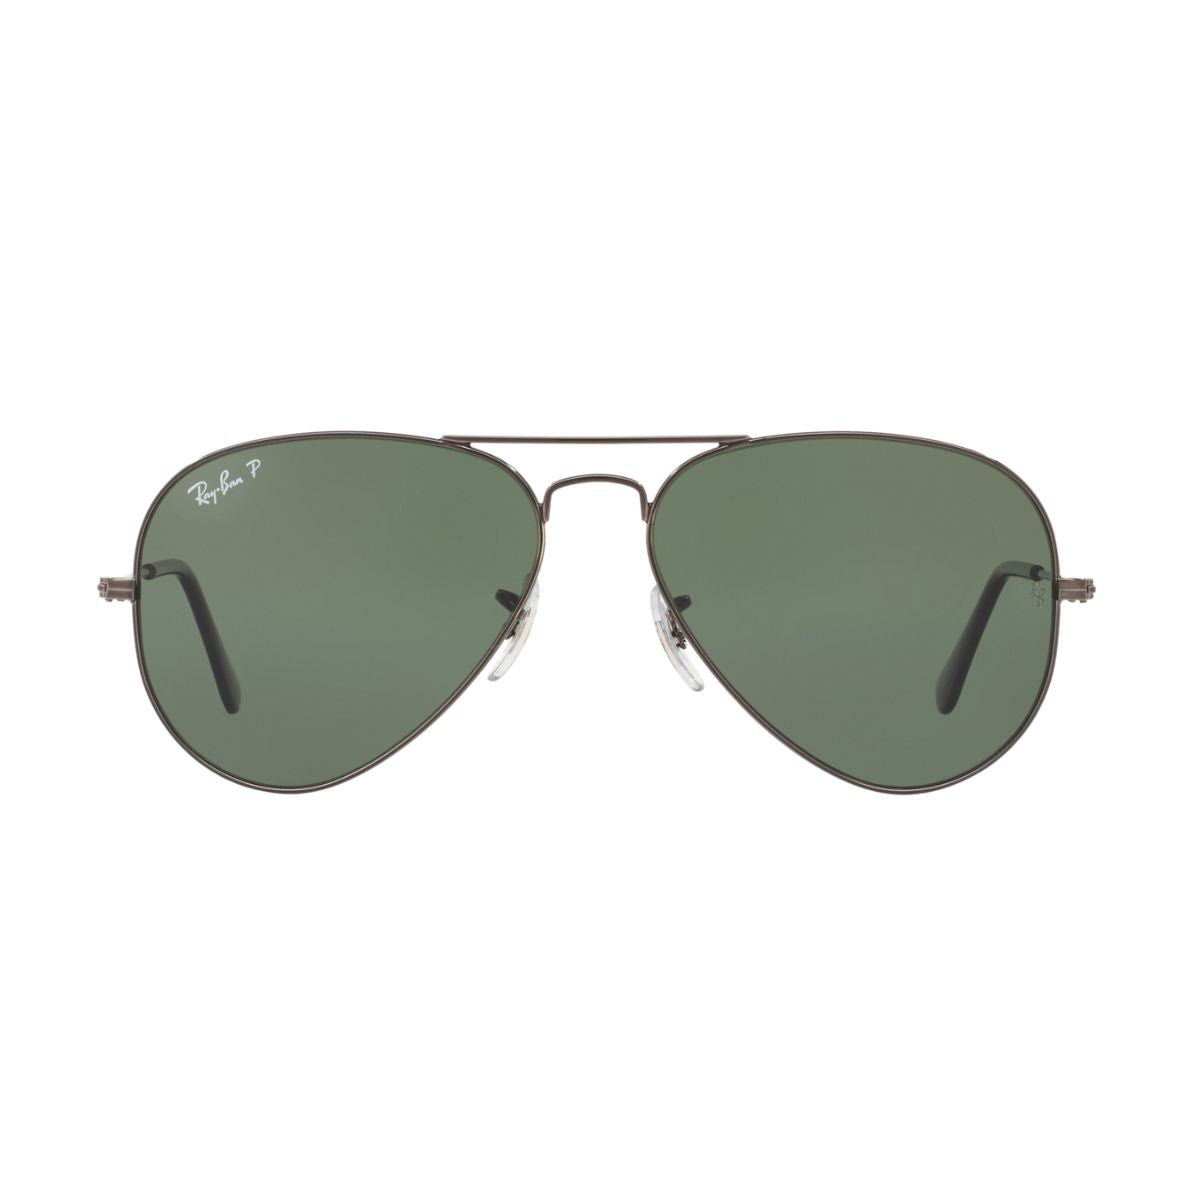 "Buy Rayban  3025 004/58 Metal Aviator Sunglasses For Men's At Optorium"